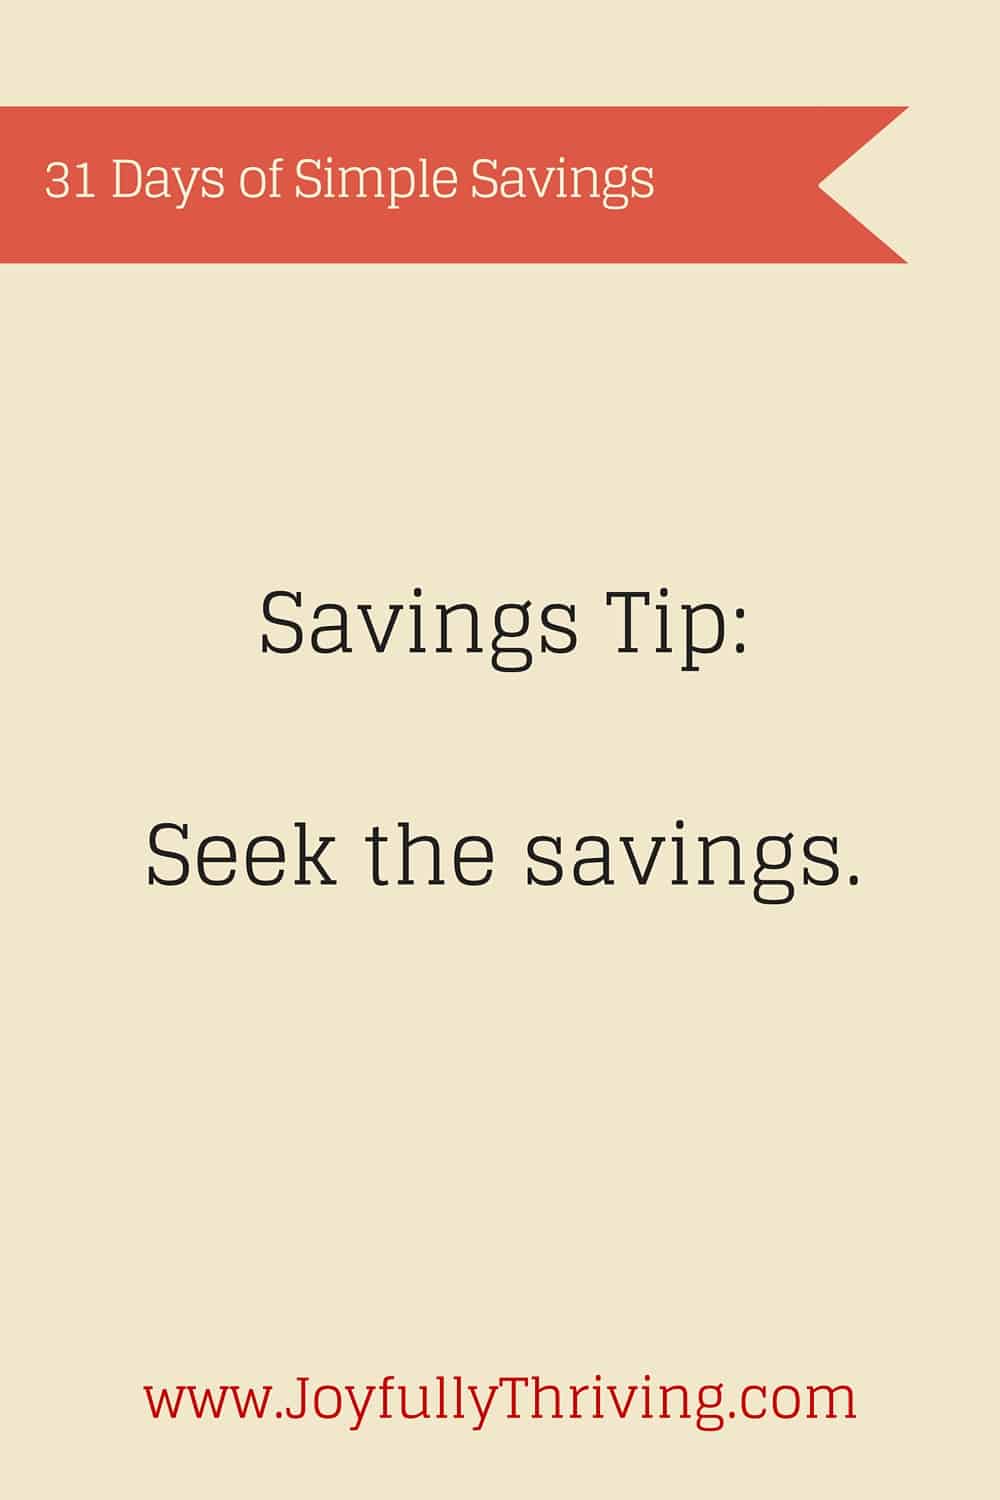 Simple Savings: Seek the Savings.